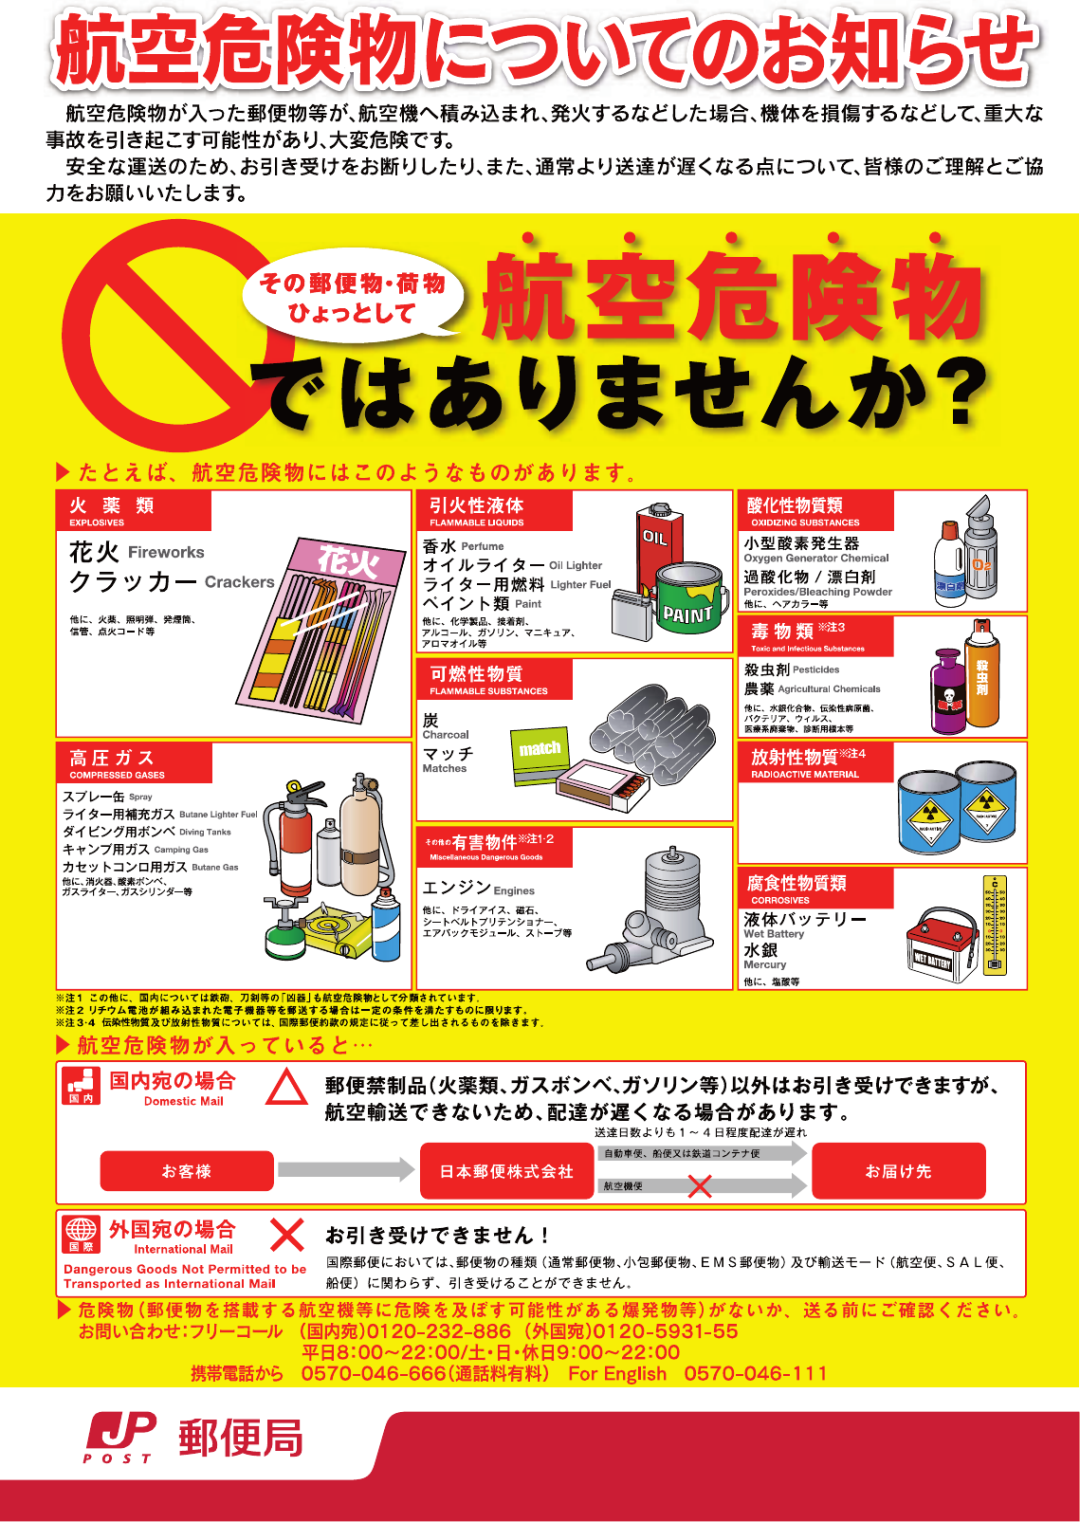 在日本怎么寄快递，有哪些选择？_图片 No.3